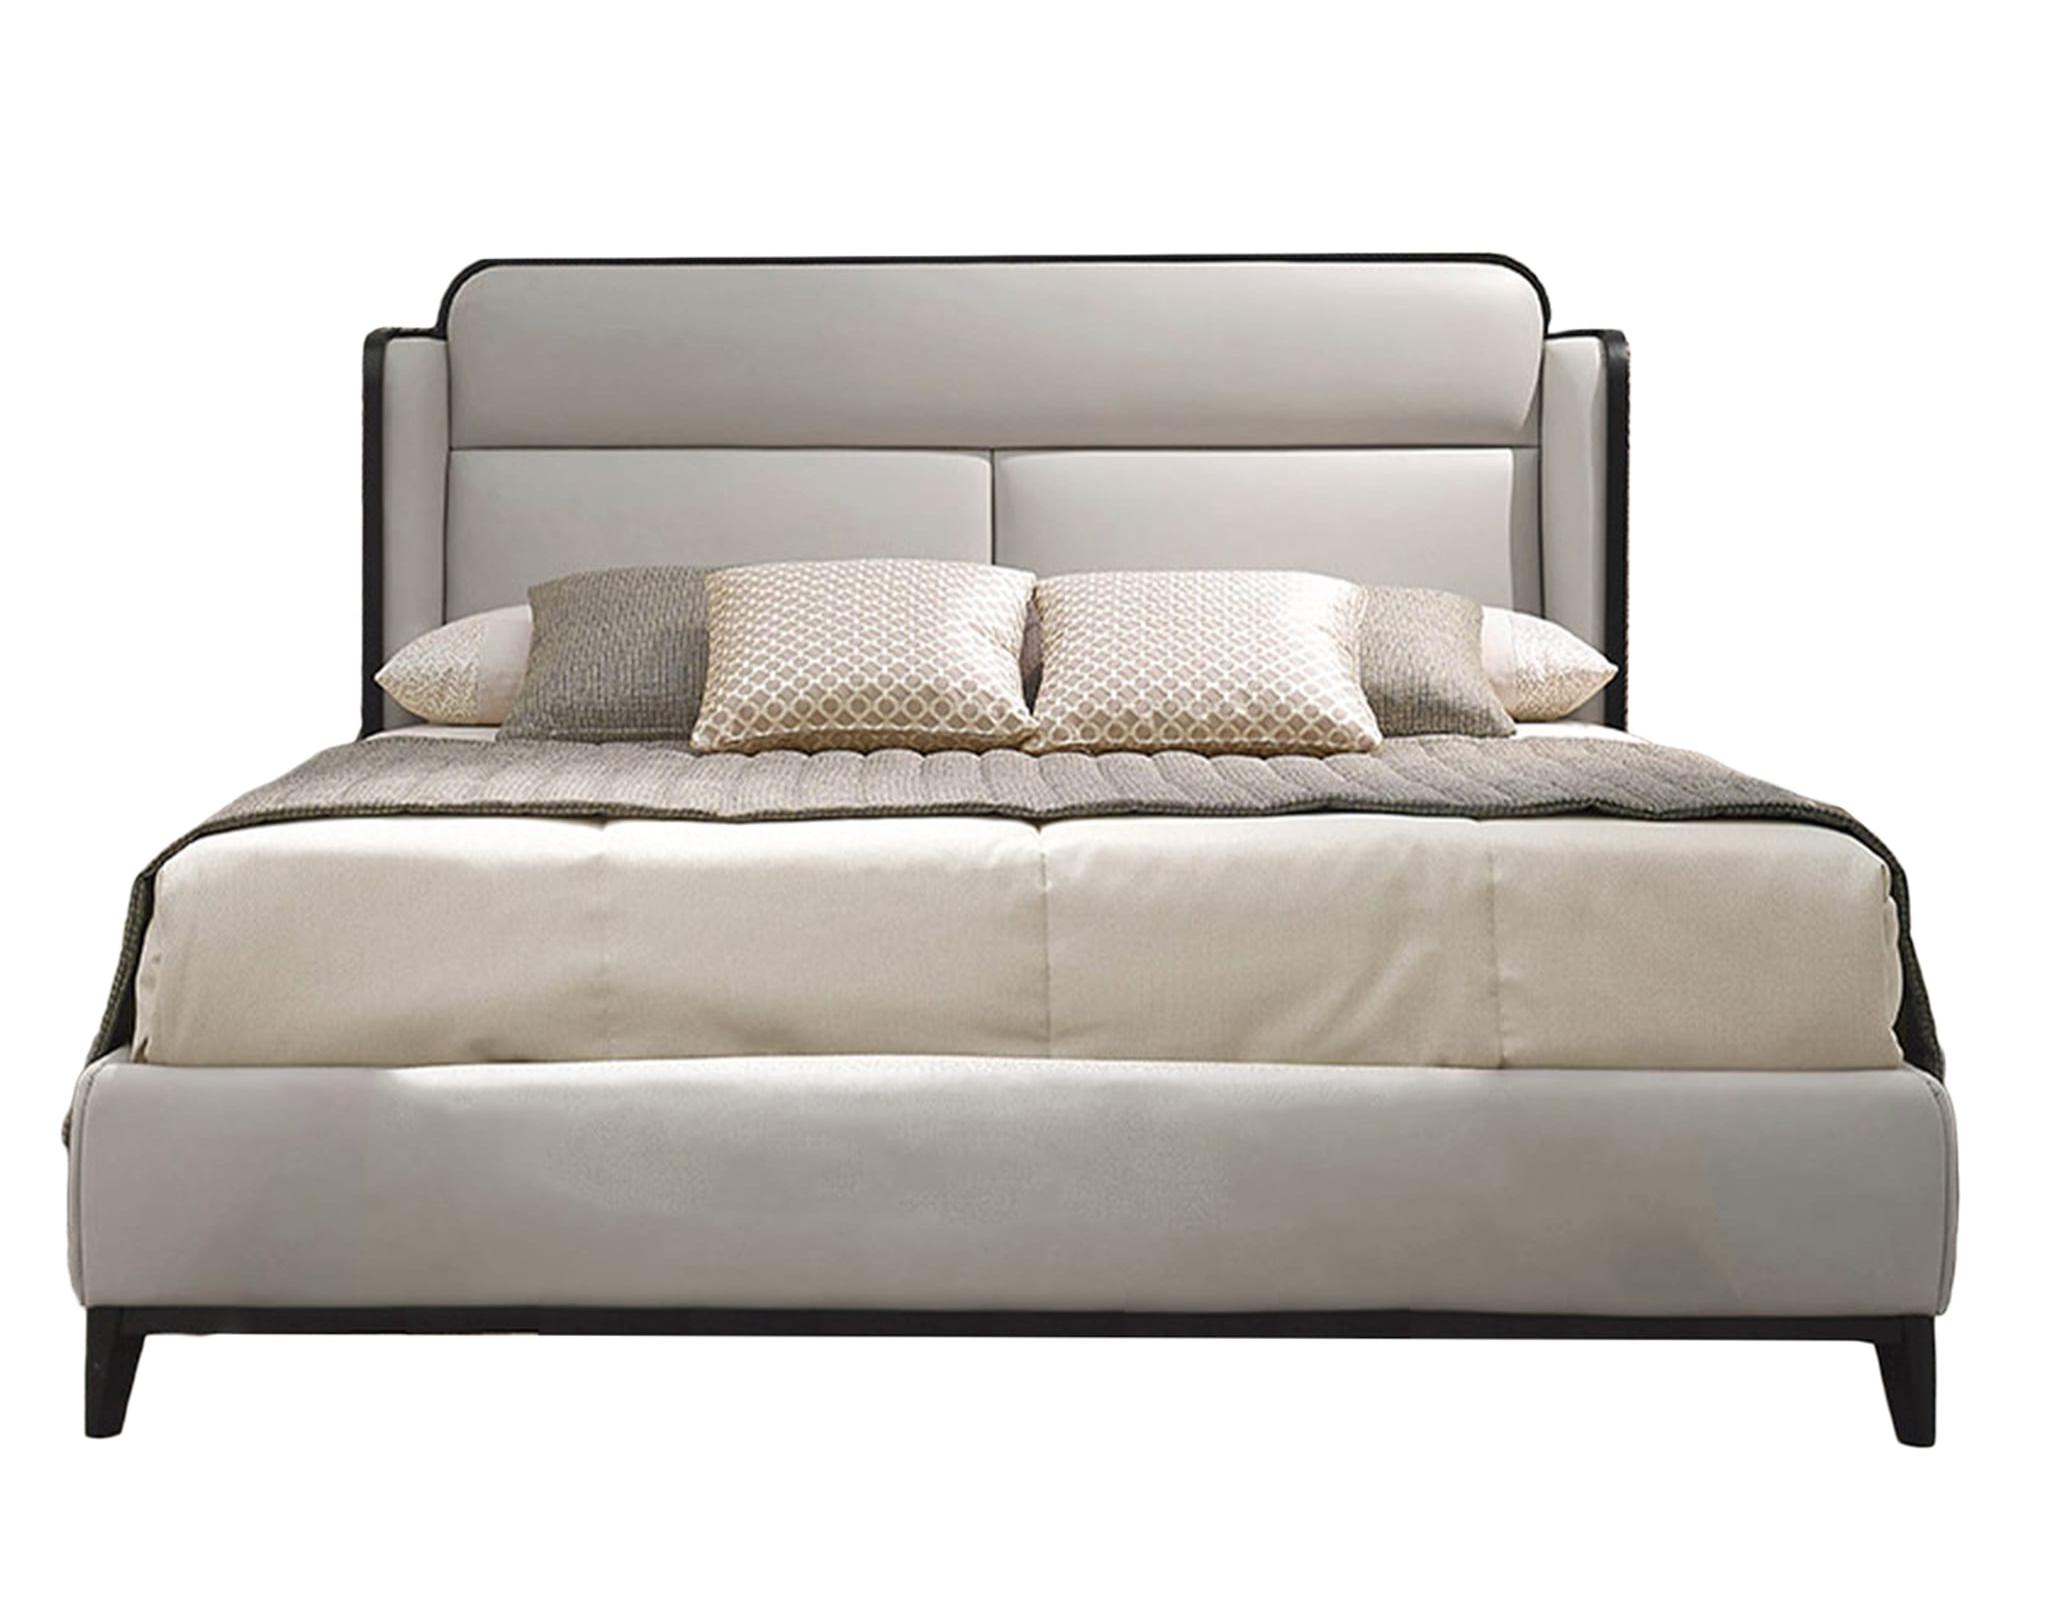 Dilan Beige Italian Bed ☞ Size: 200 x 200 cm